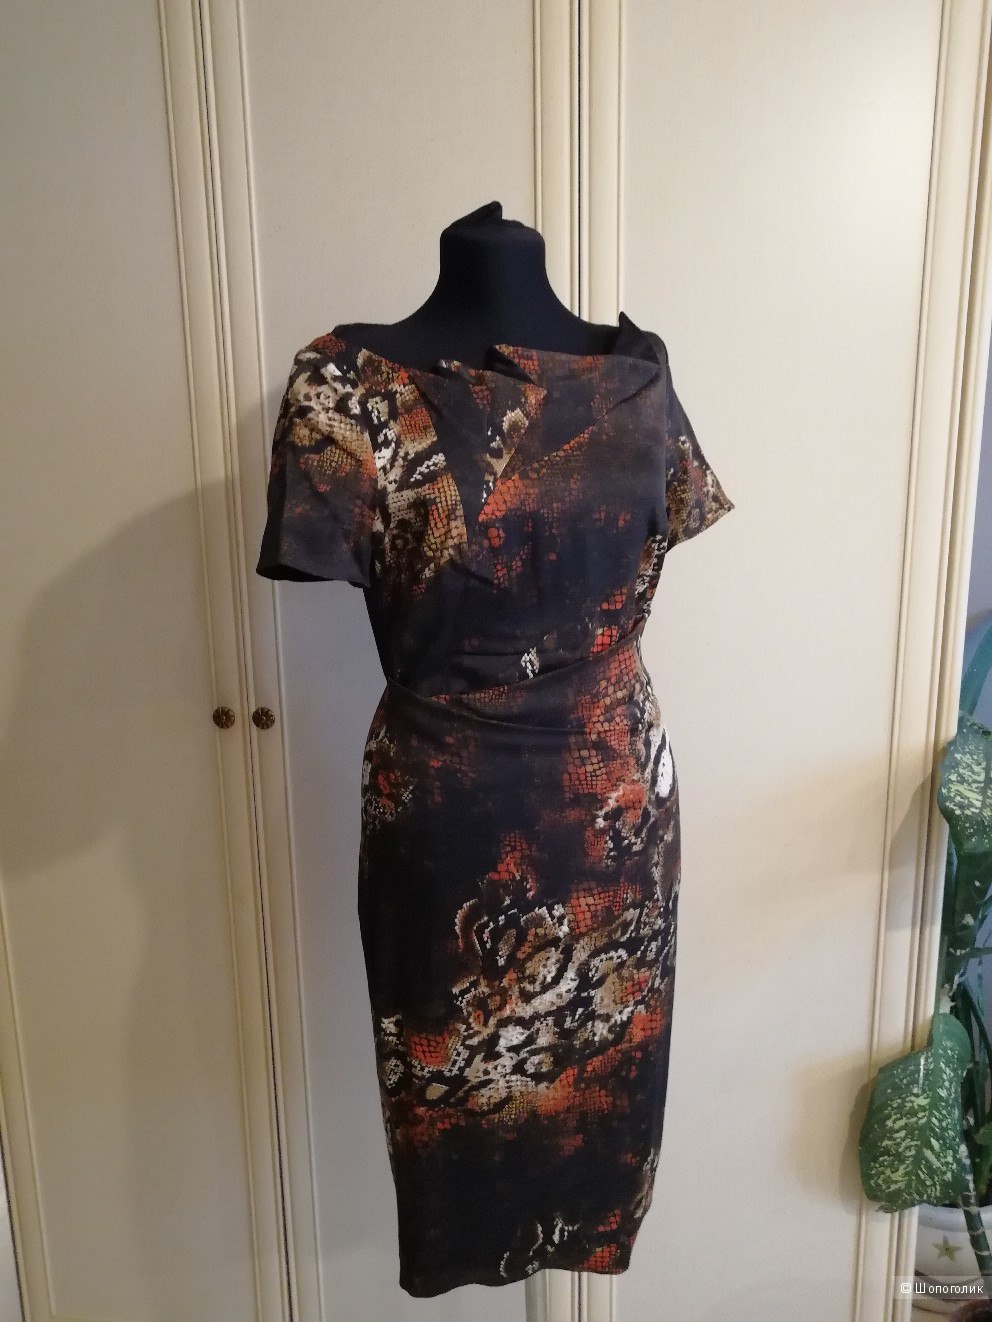 Karen Millen платье красная змея размер UK 12